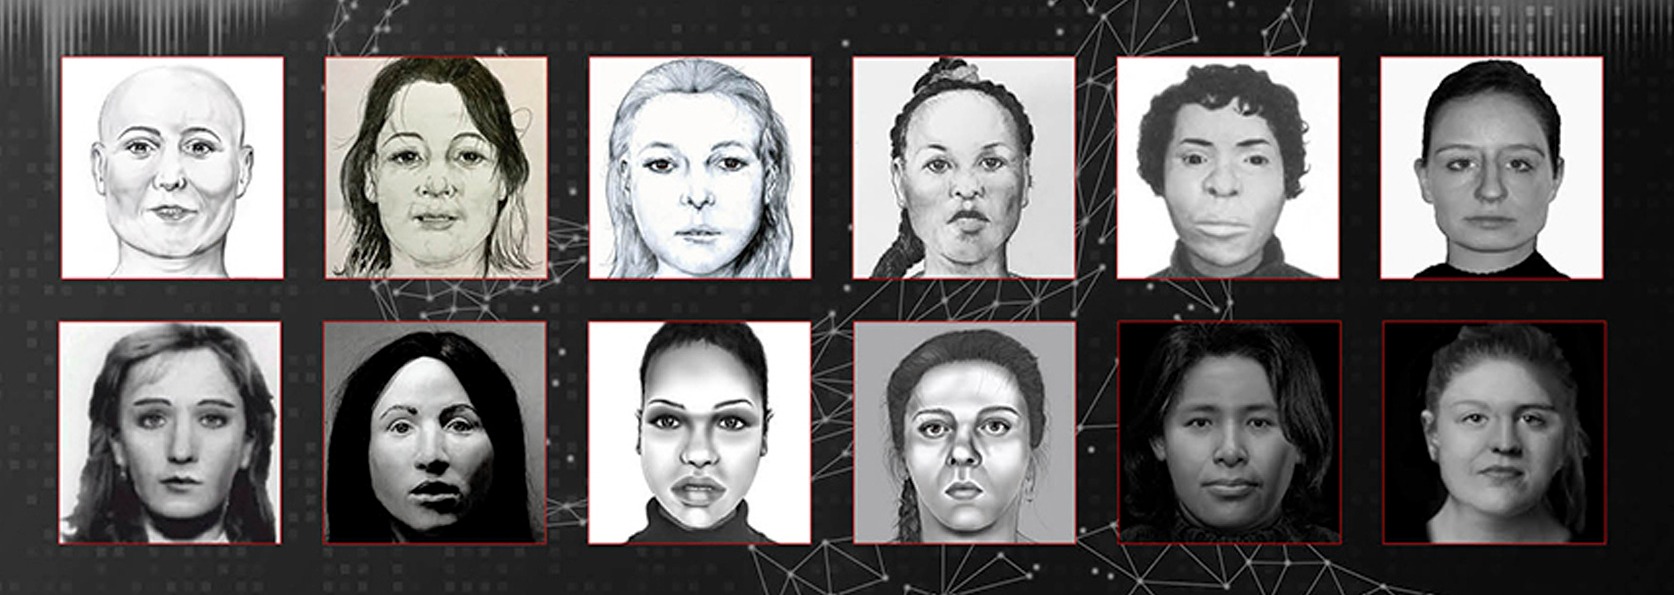 Polizisten versuchen immer noch, die 21 anderen Frauen zu identifizieren (Gesichtsrekonstruktionsskizzen einiger abgebildeter Frauen)